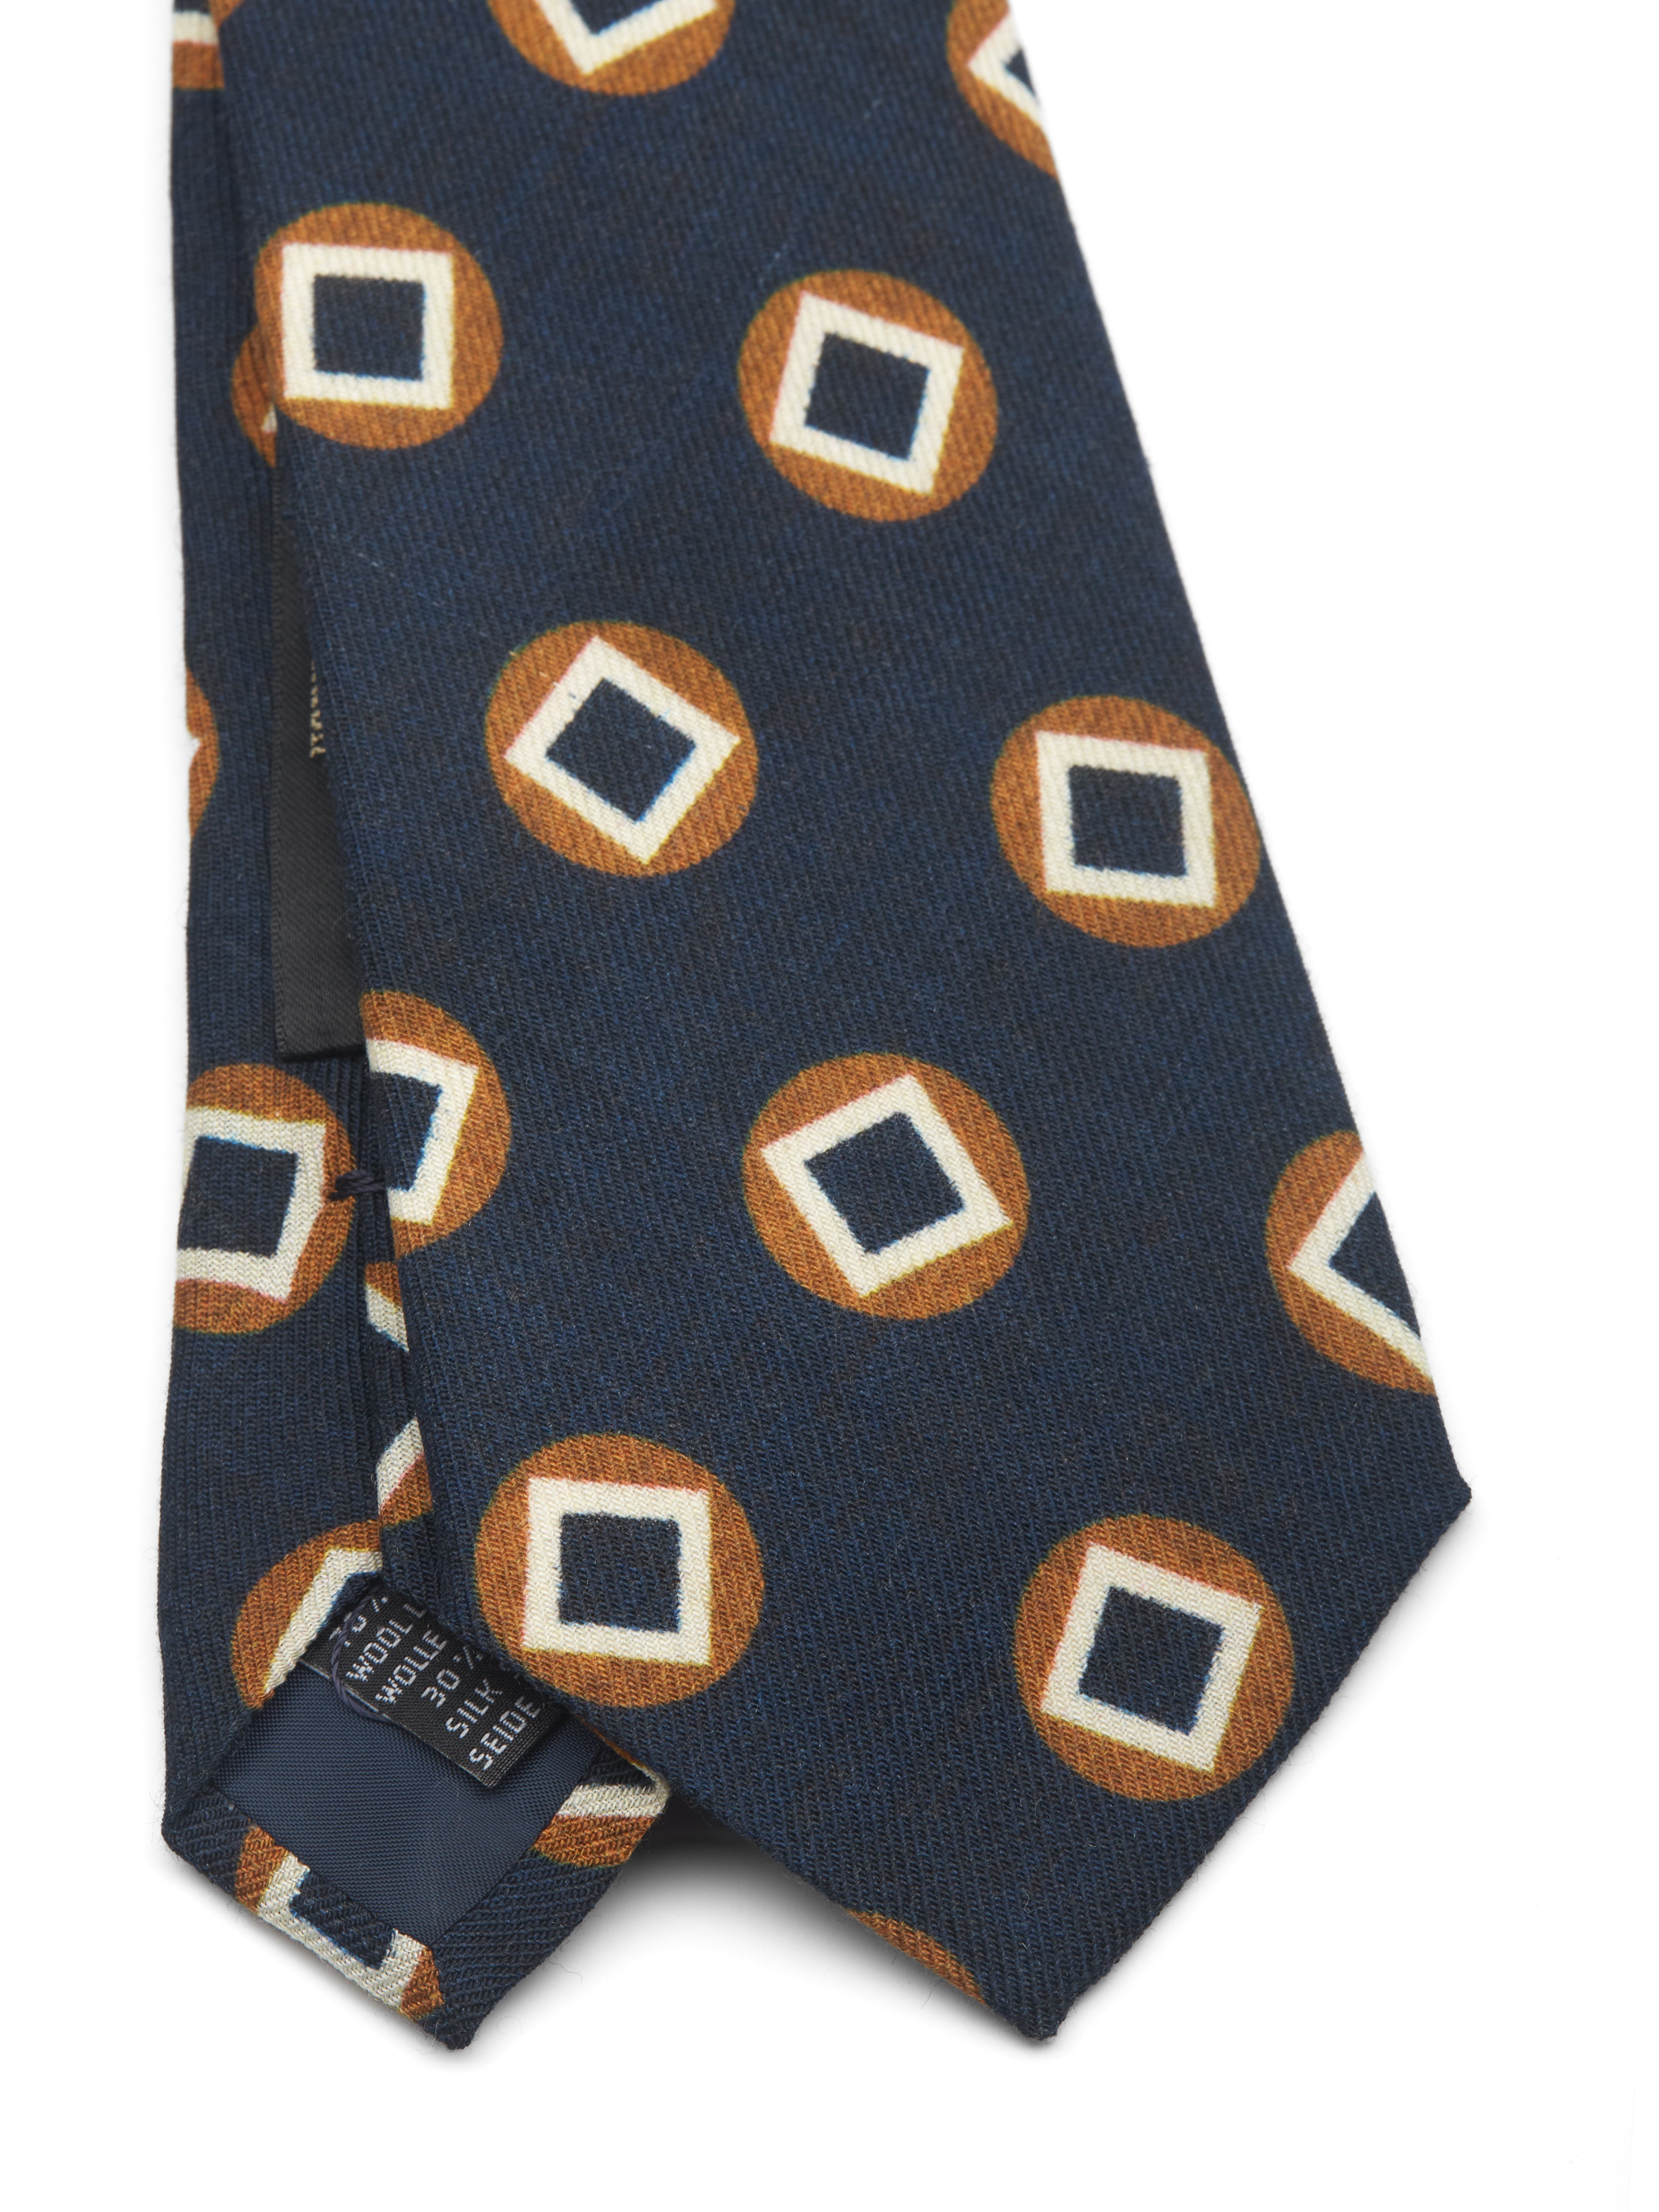 Navy Clivedon Silk Tie